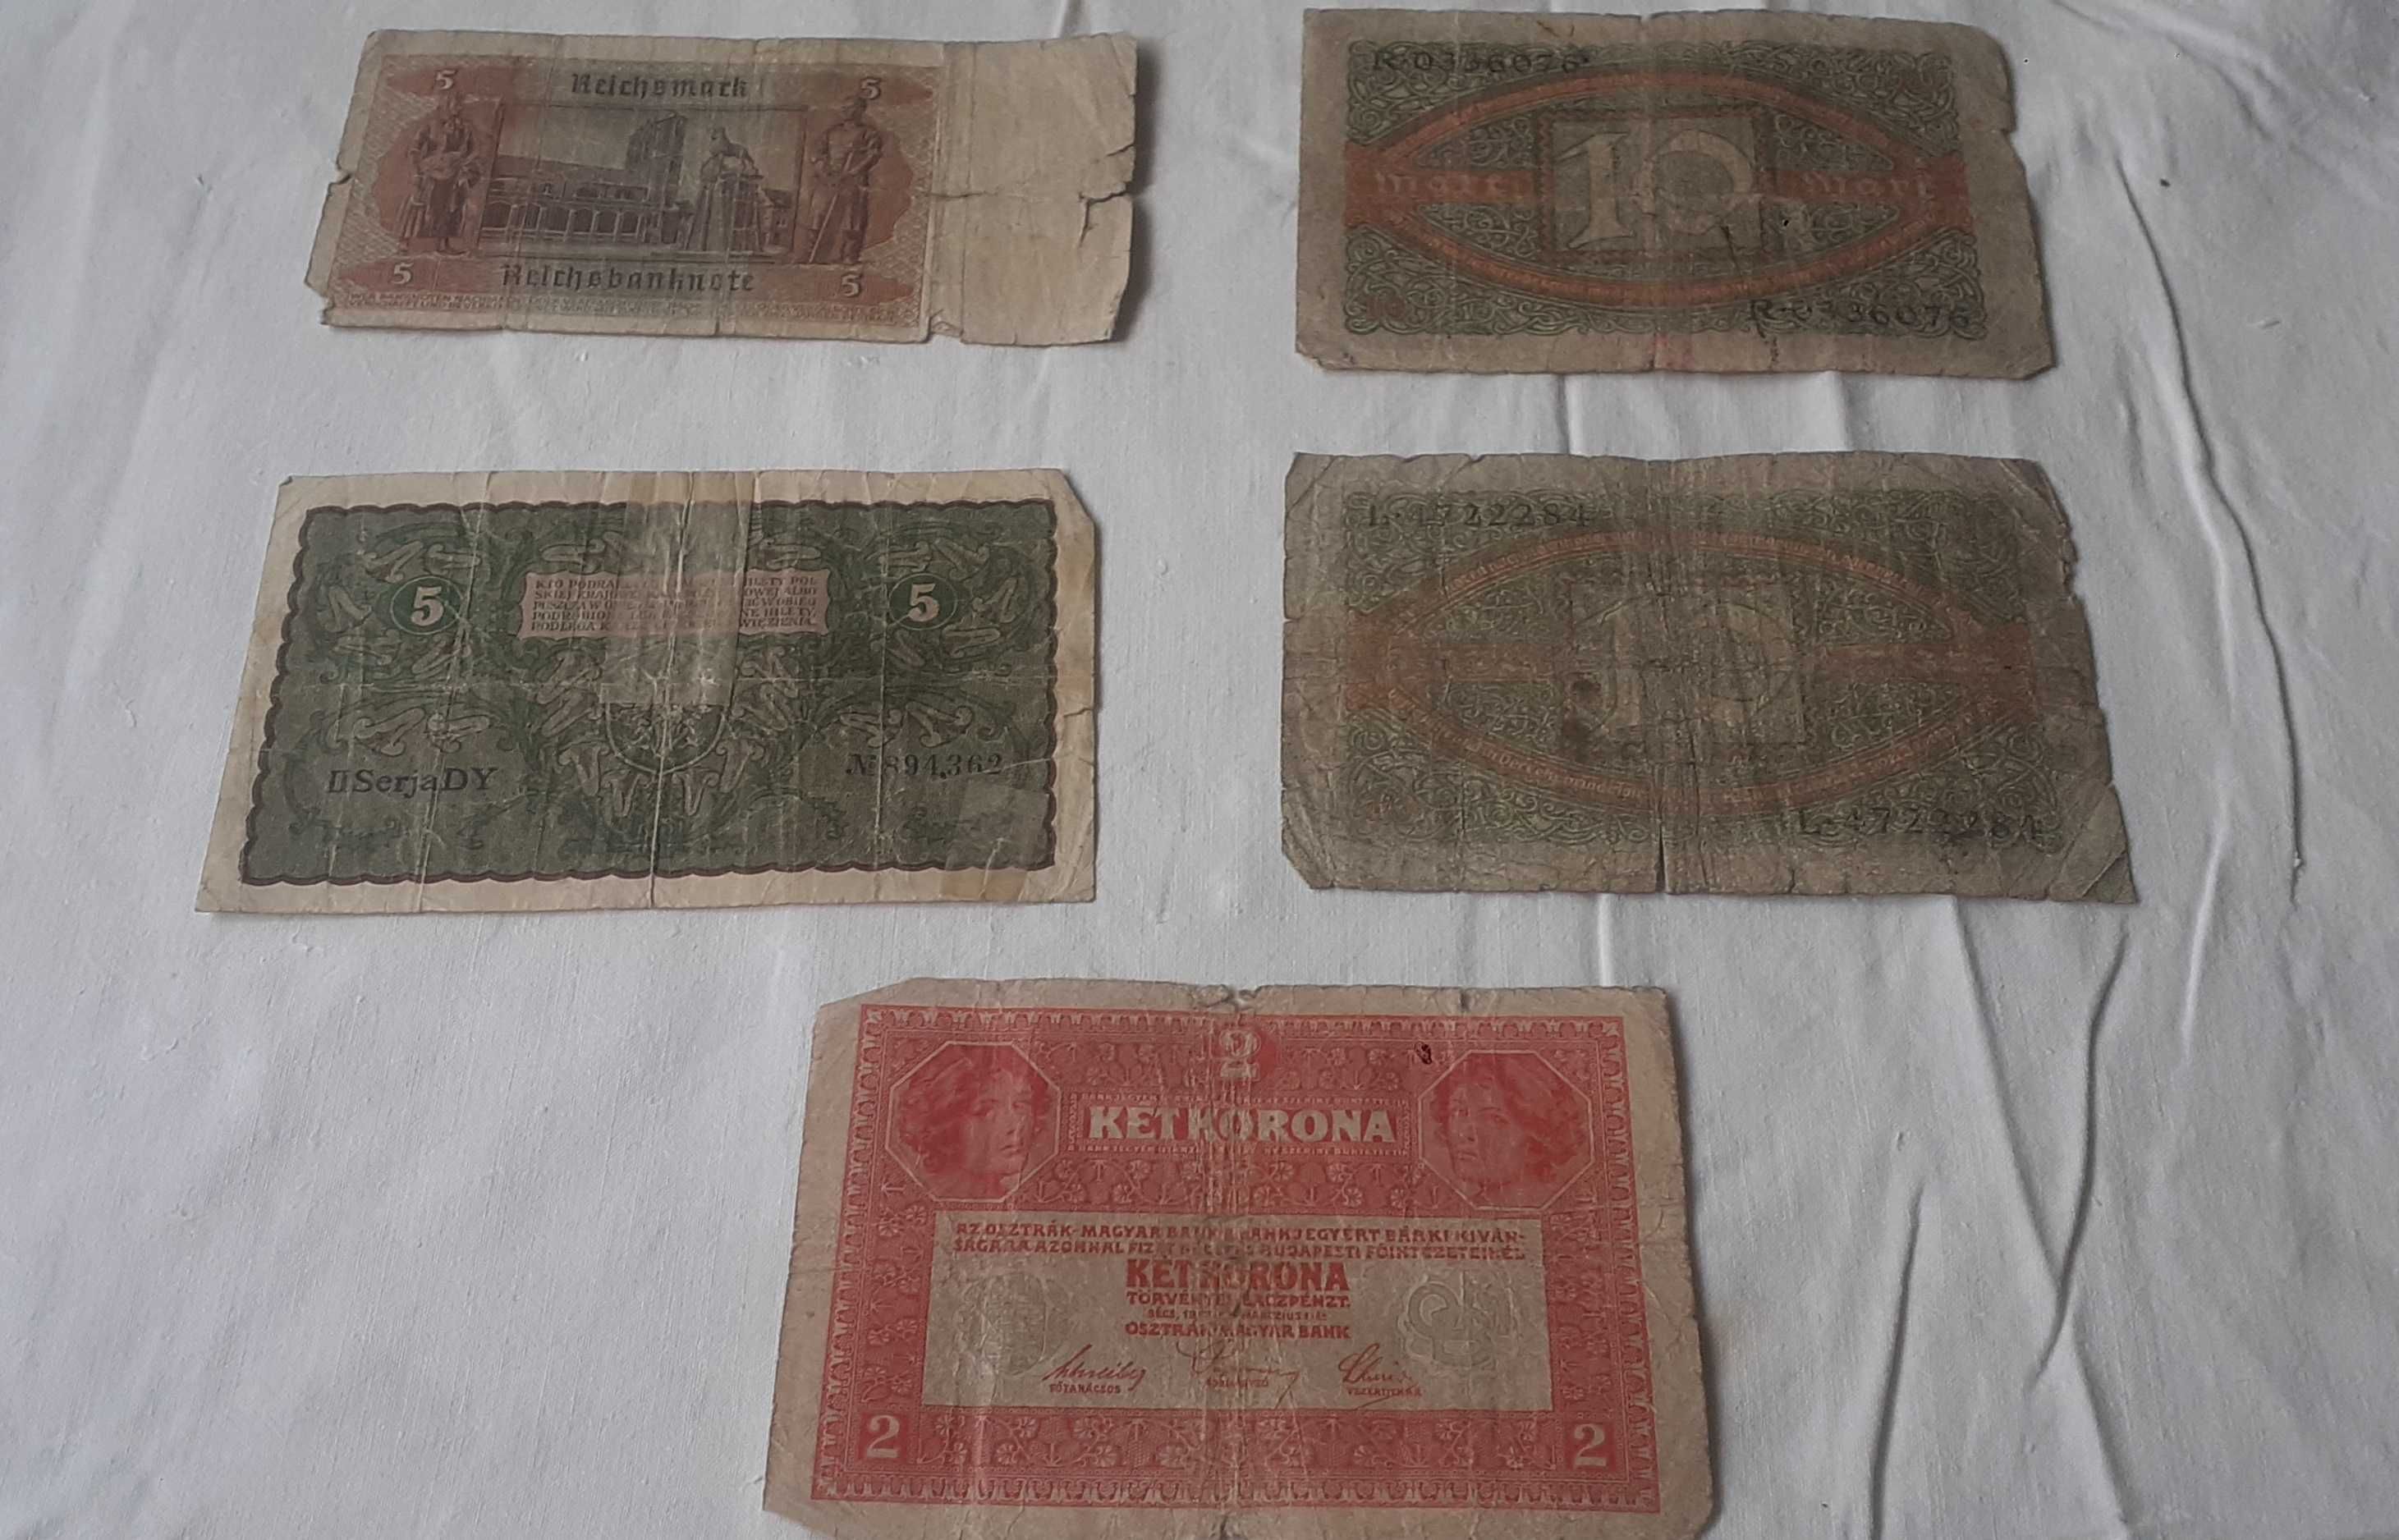 Stare banknoty przedwojenne 9 sztuk